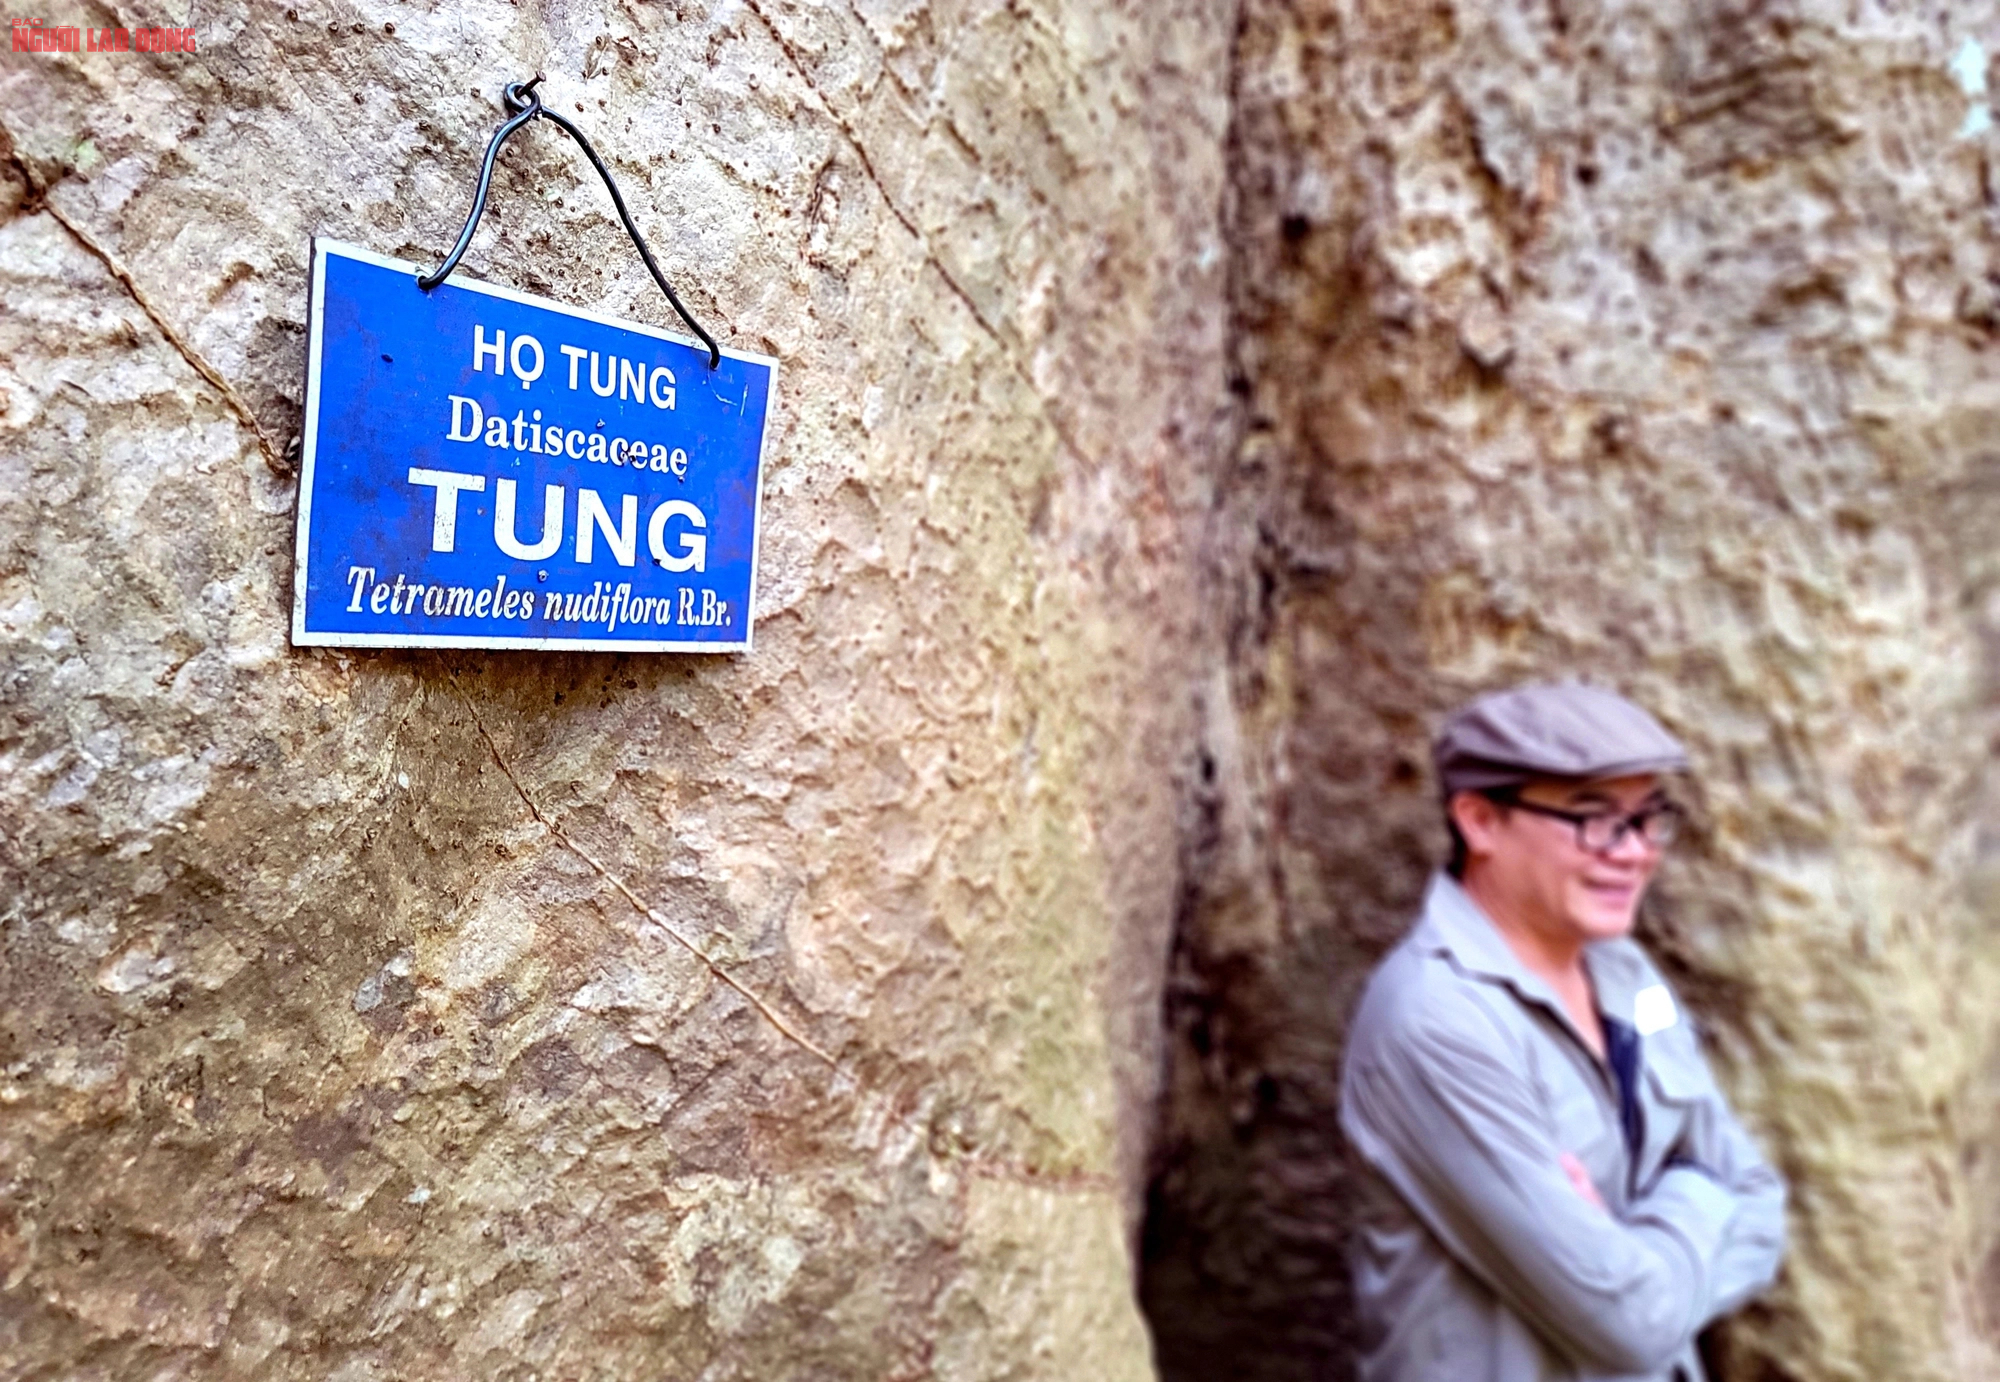 Thăm "cụ" Tung khổng lồ 500 tuổi trong Vườn quốc gia Cát Tiên- Ảnh 6.